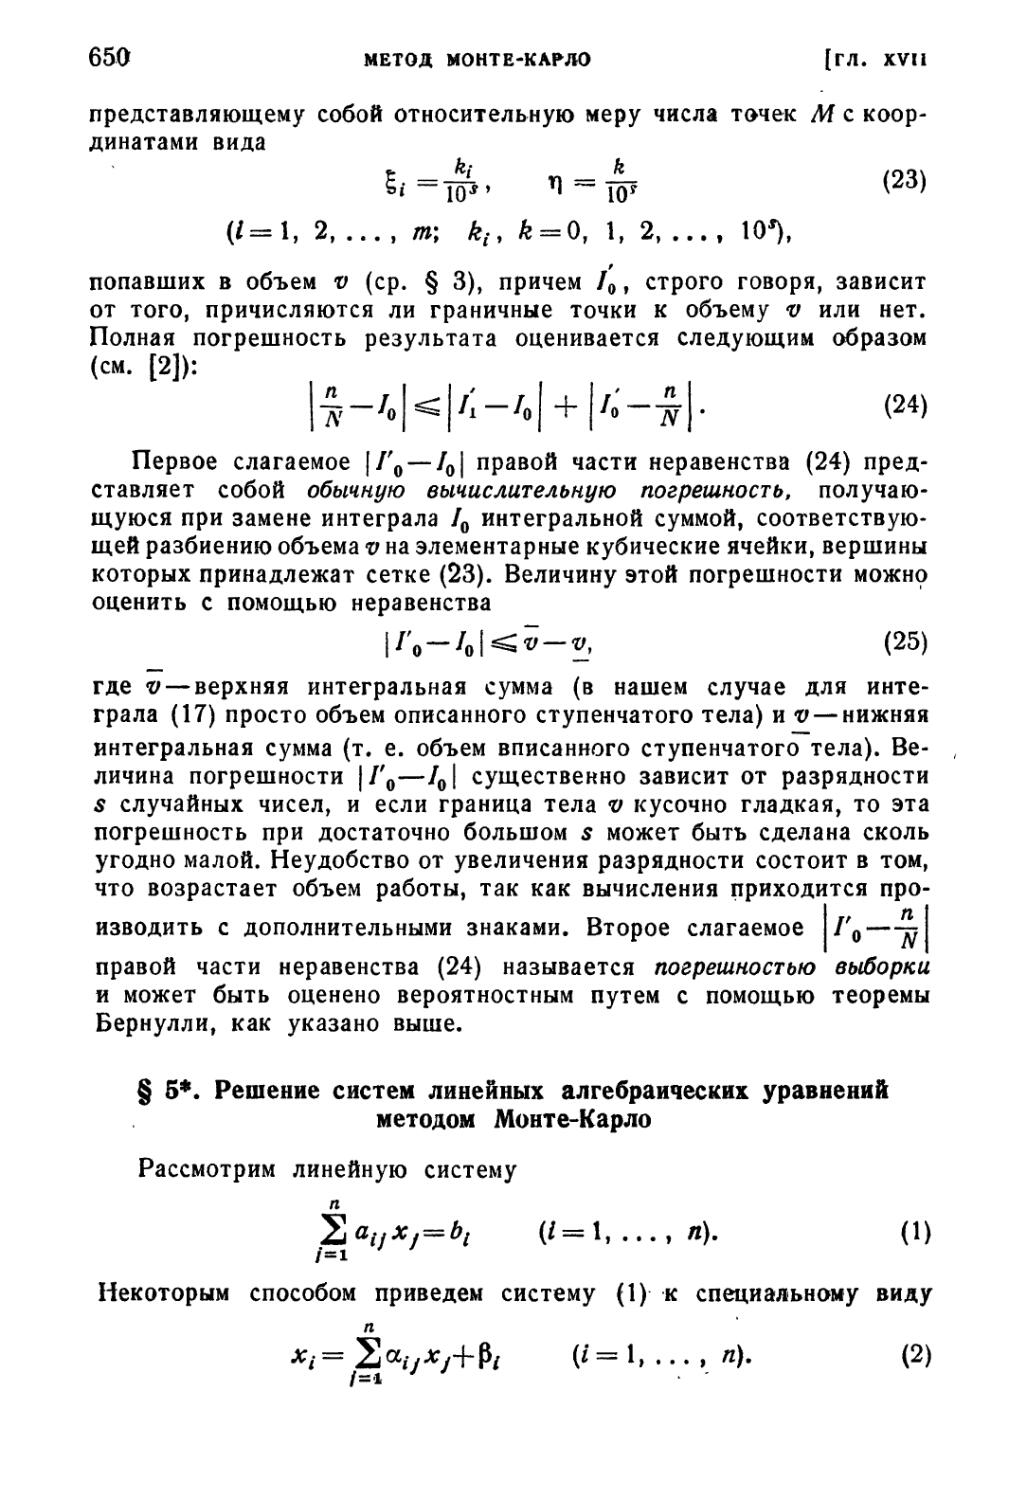 § 5*. Решение систем линейных алгебраических уравнений методом Монте-Карло